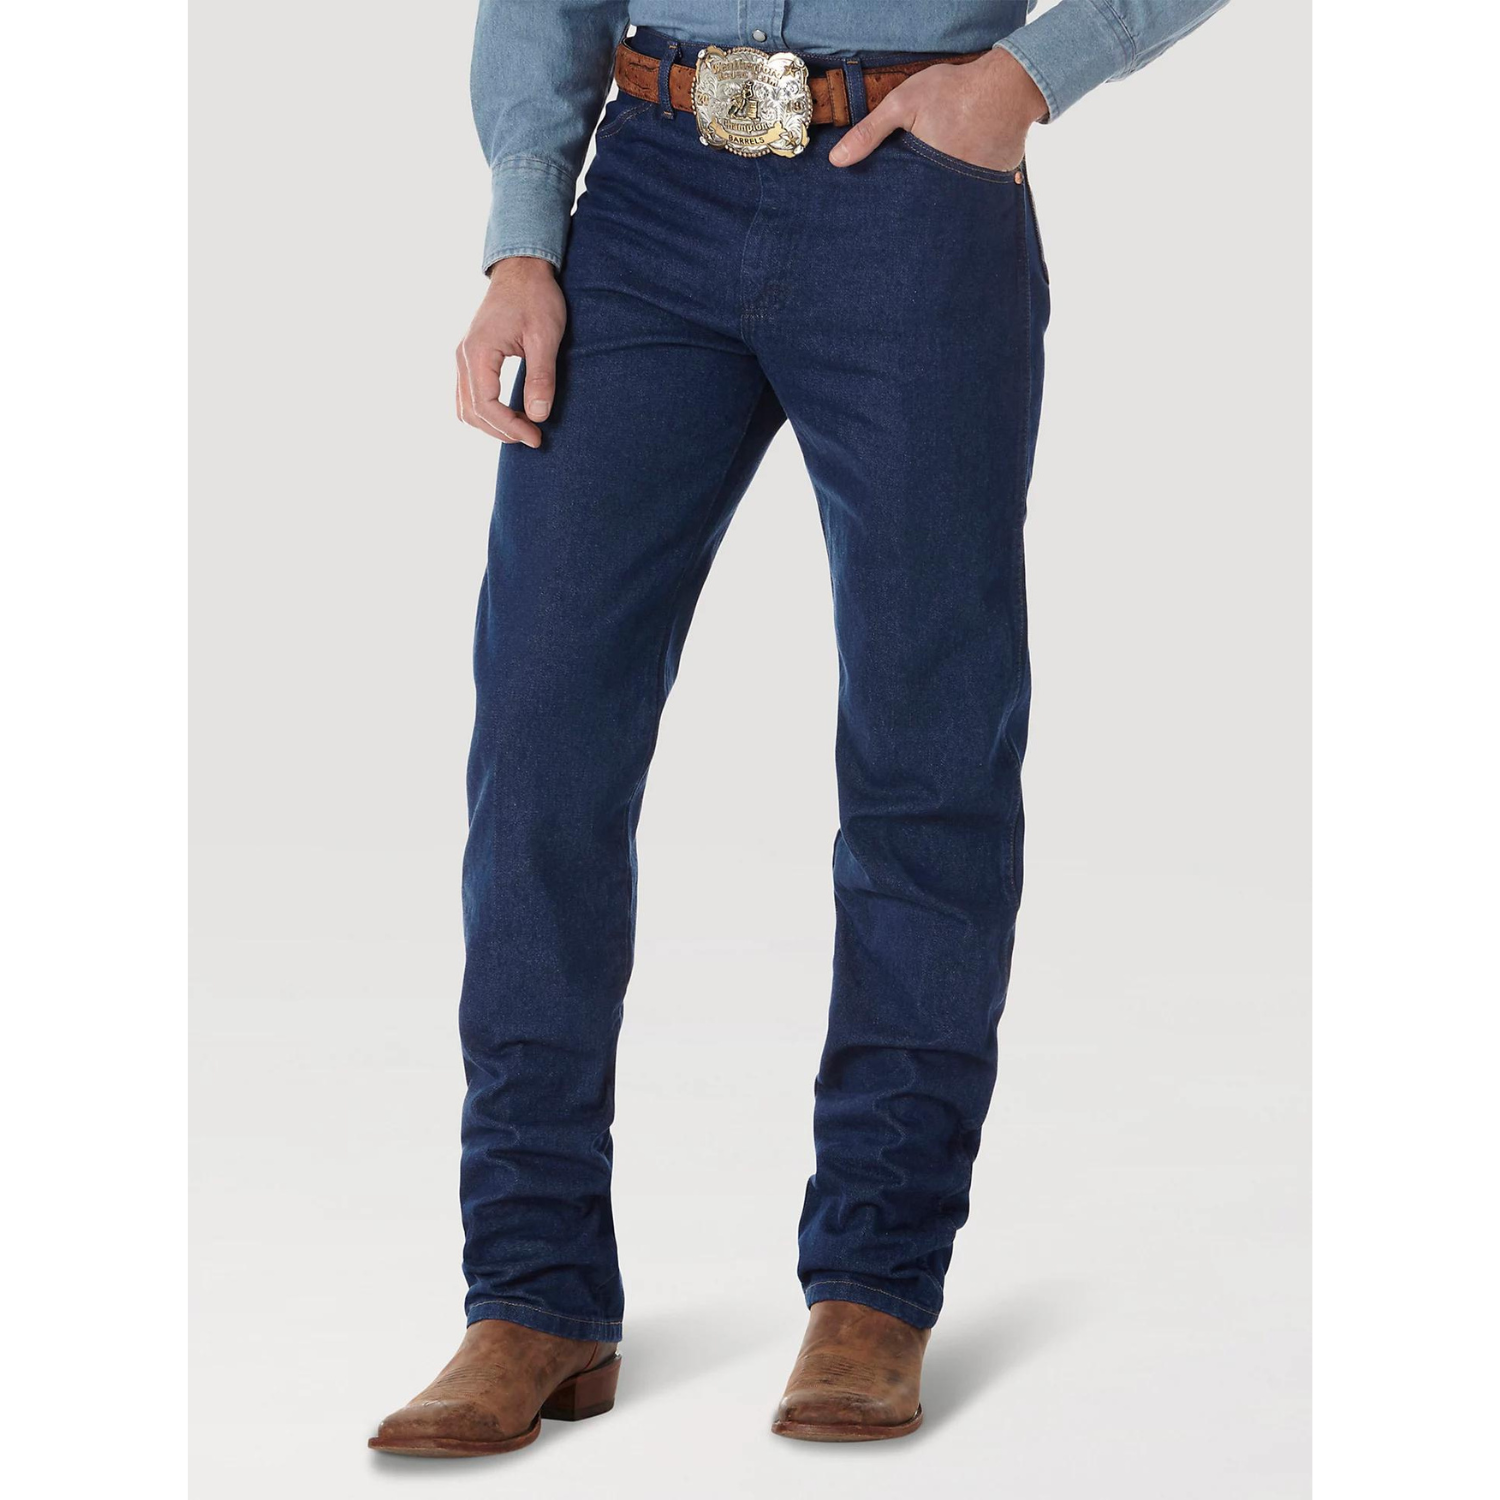 Wrangler Men's Original Cowboy Cut Jeans - Saddleworld Devonport